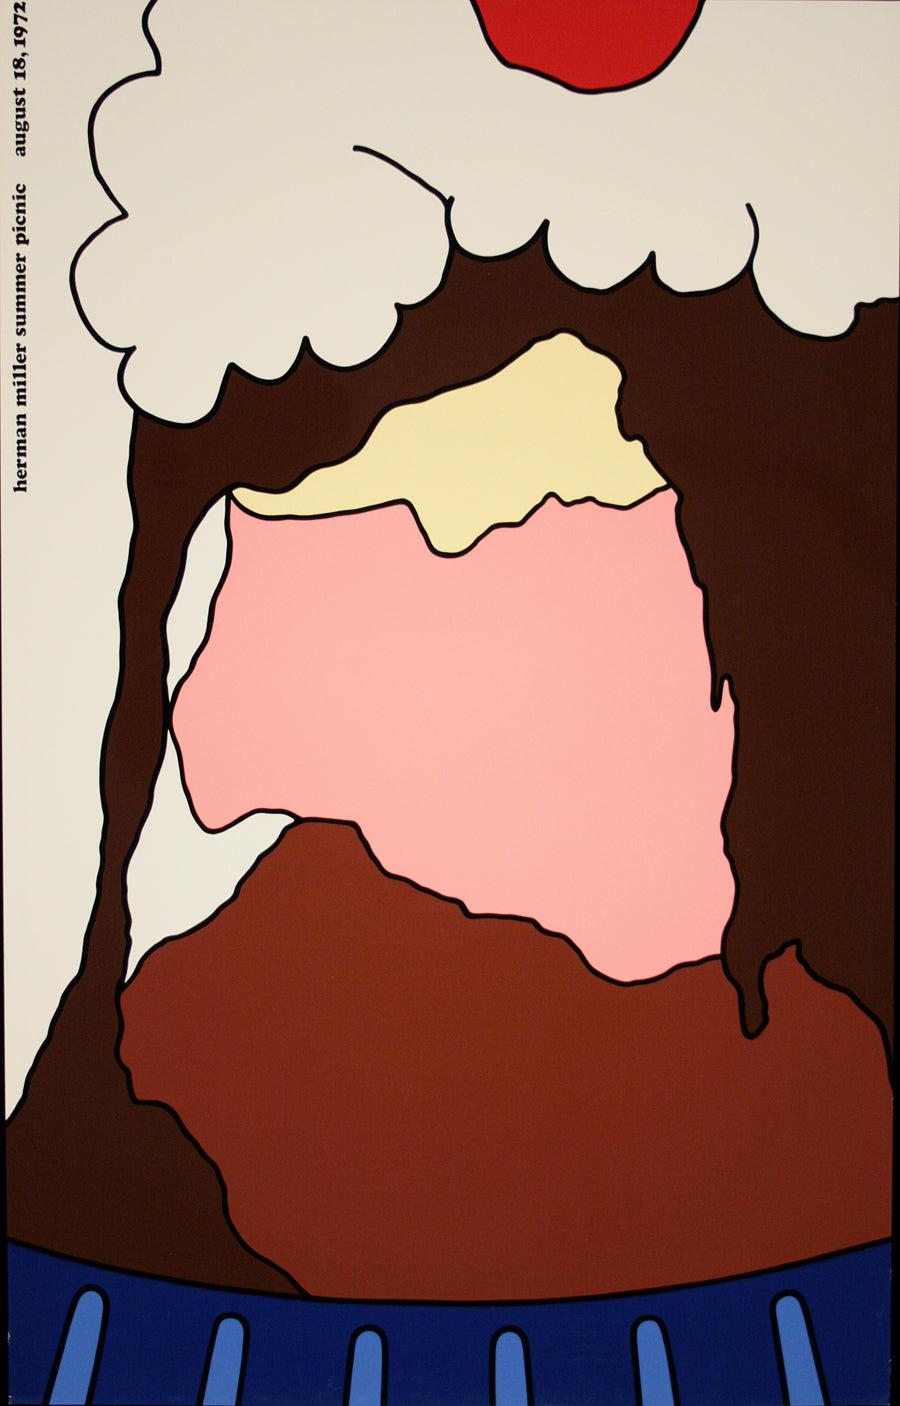 Original Herman Miller Poster 1972 by Steve Frykholm - Ice Cream Sundae Mtd